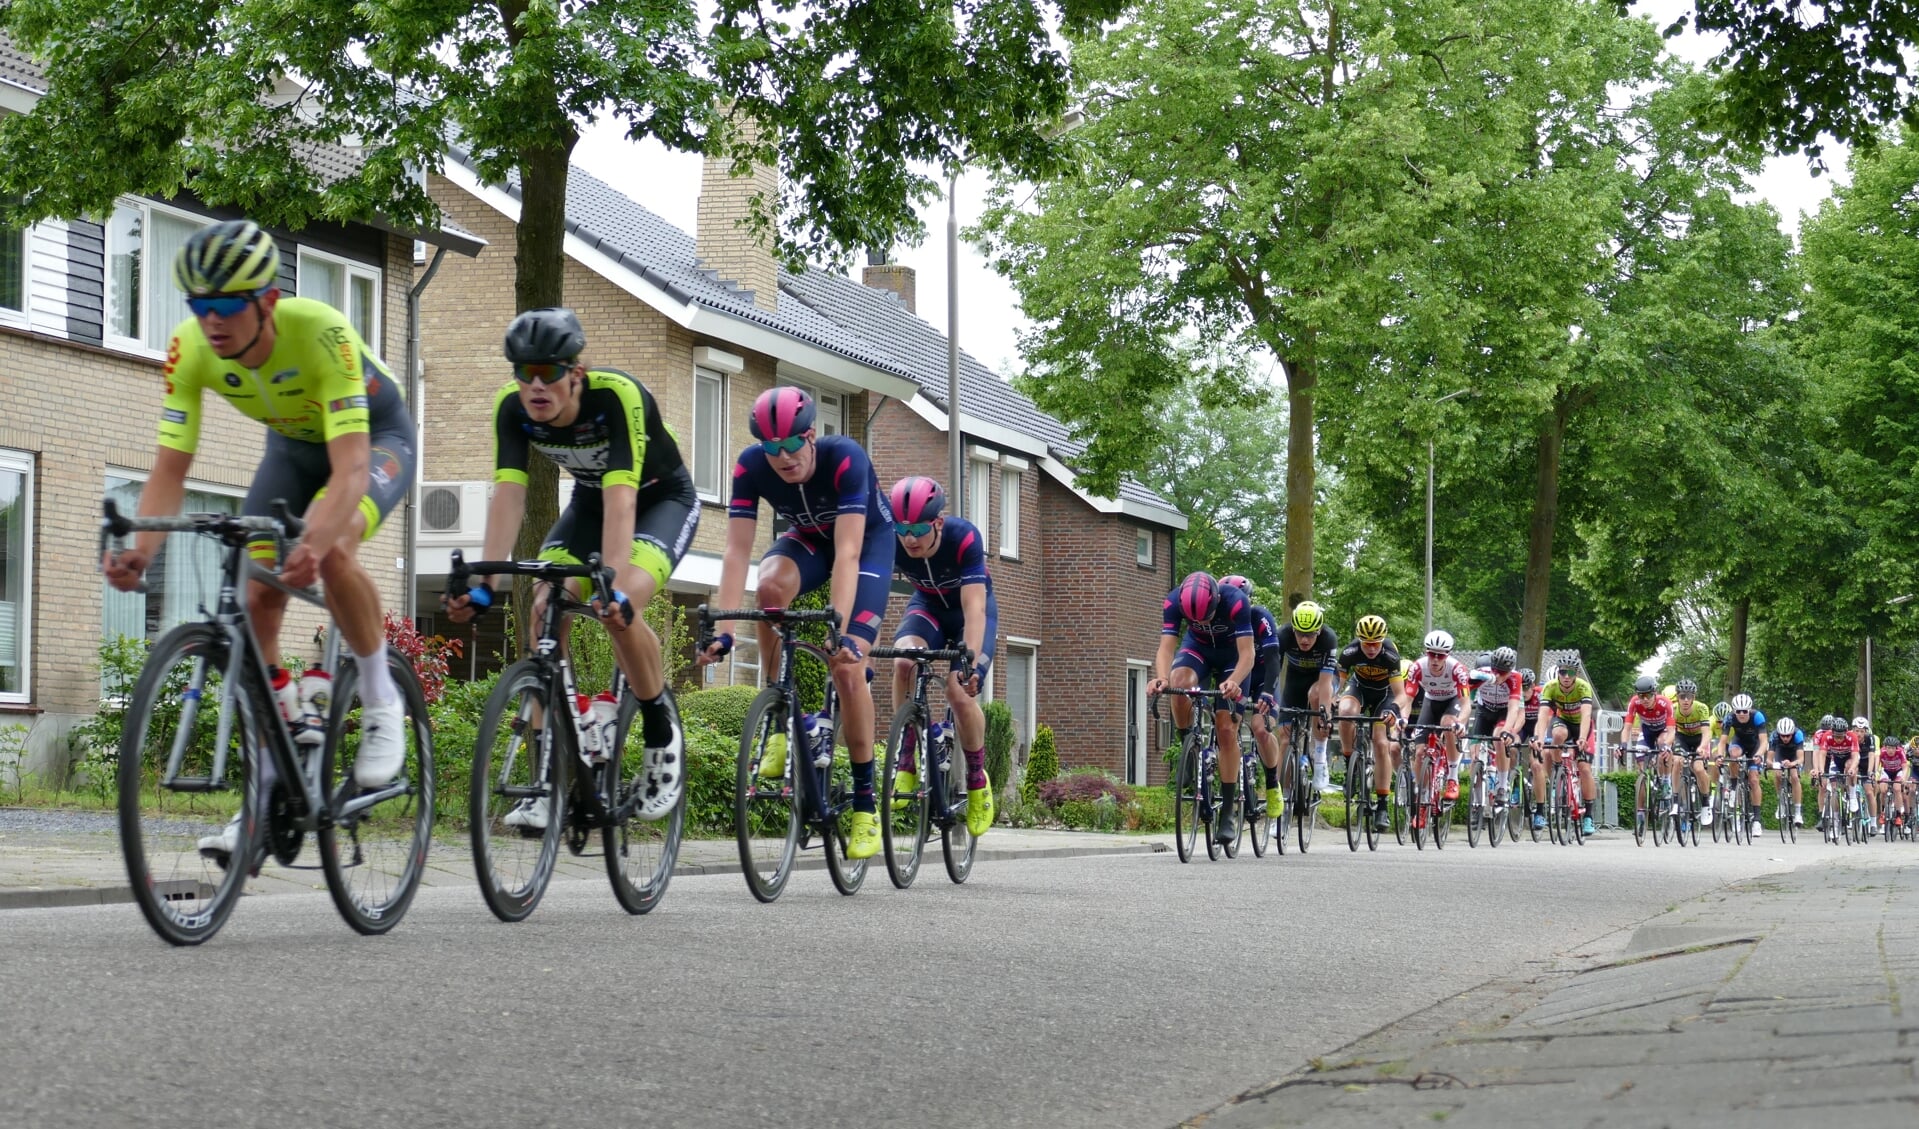 De wielrenners rijden op Hemelvaartsdag weer door de straten van Mierlo. (Foto: Jos Lenssen)